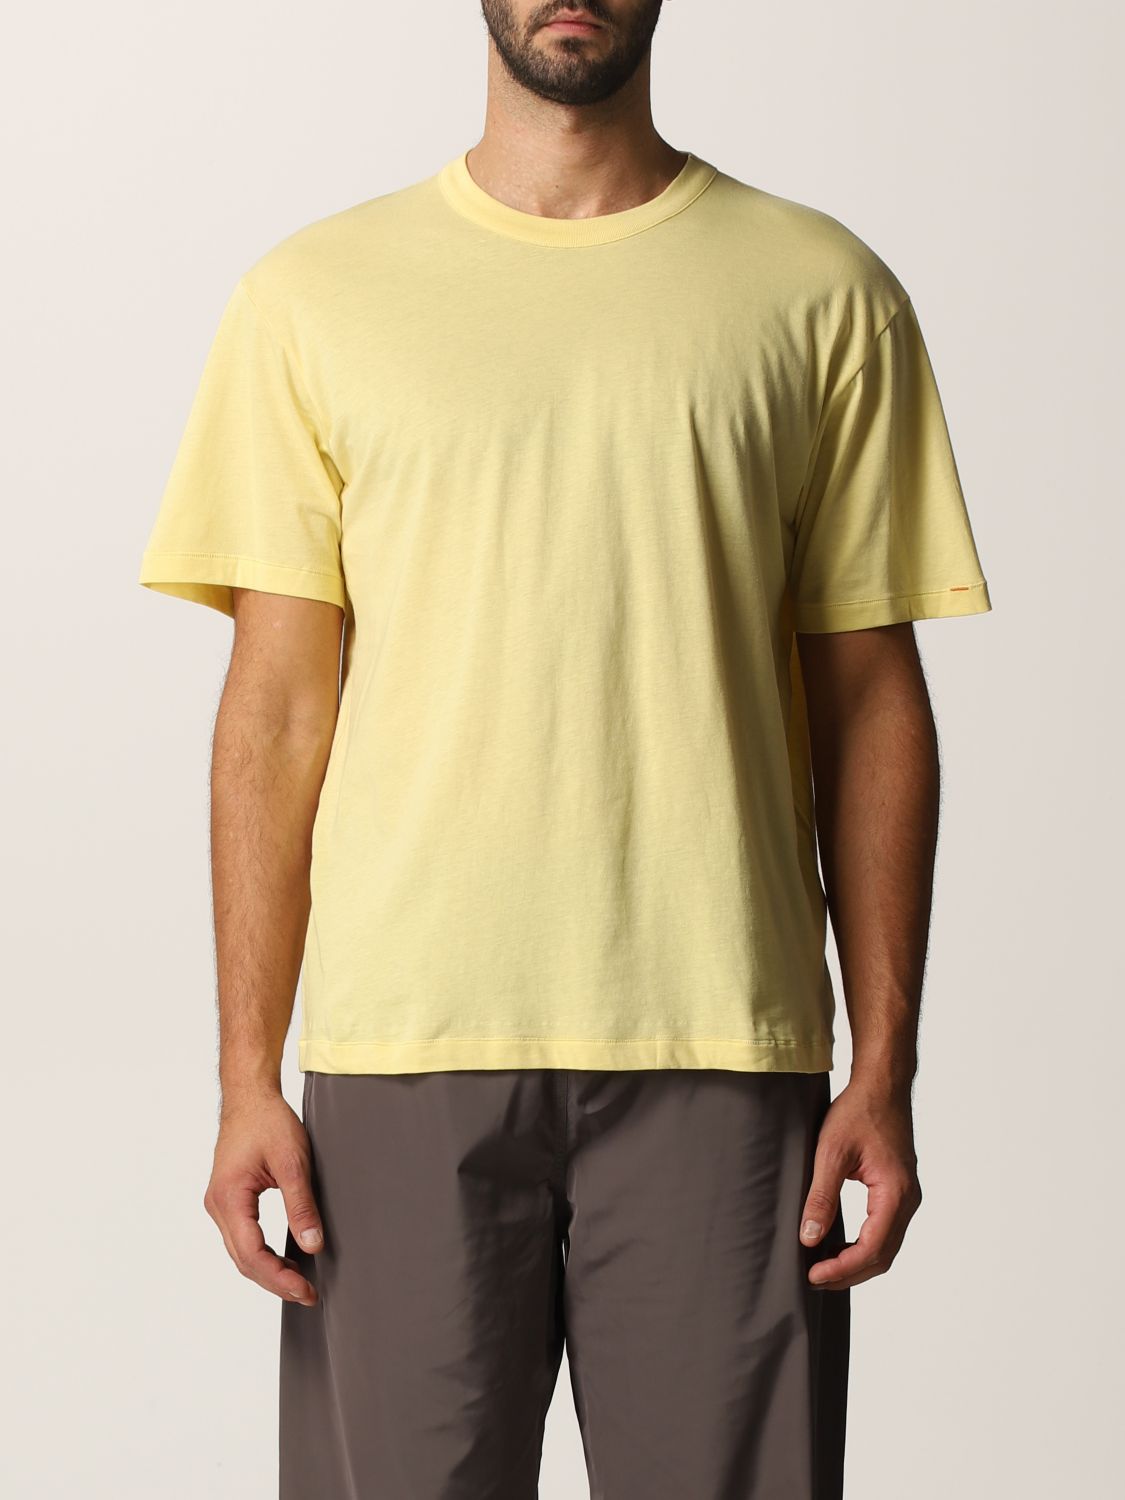 T-Shirt Heron Preston For Calvin Klein: T-shirt herren Orange 2.0-heron Preston X Calvin Klein schwarz 5